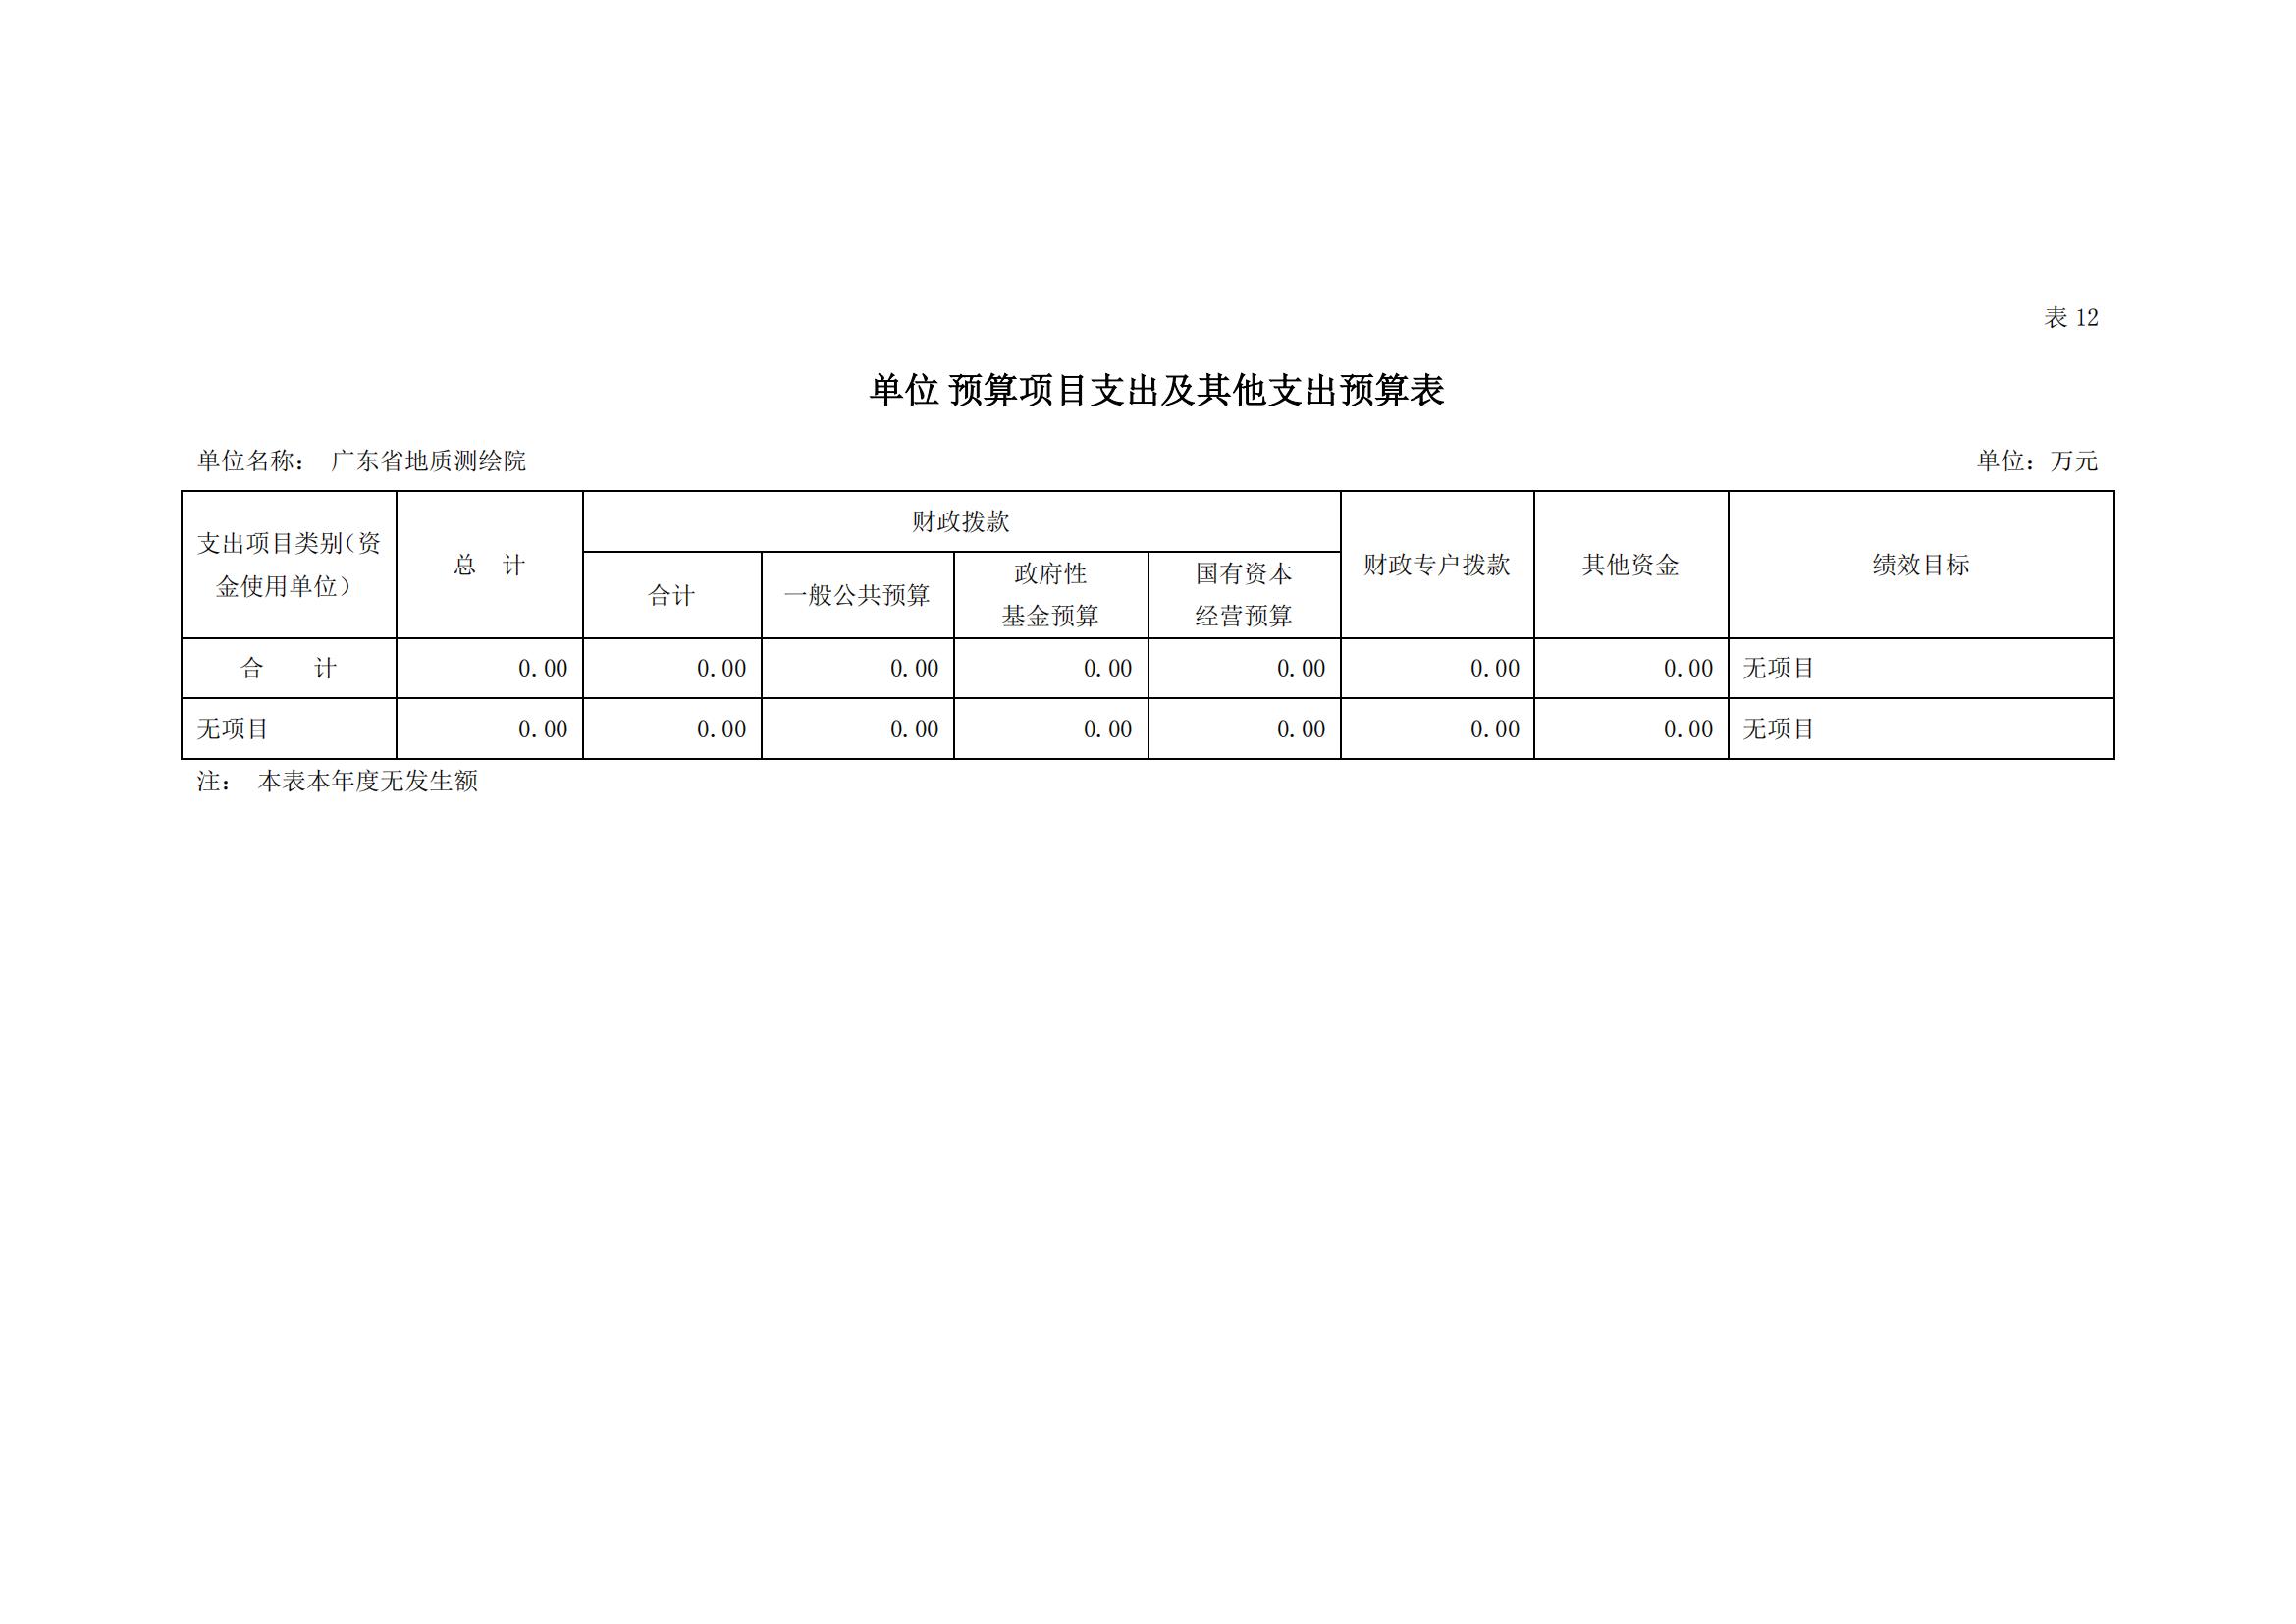 2021年广东省地质测绘院部门预算公开_19.jpg